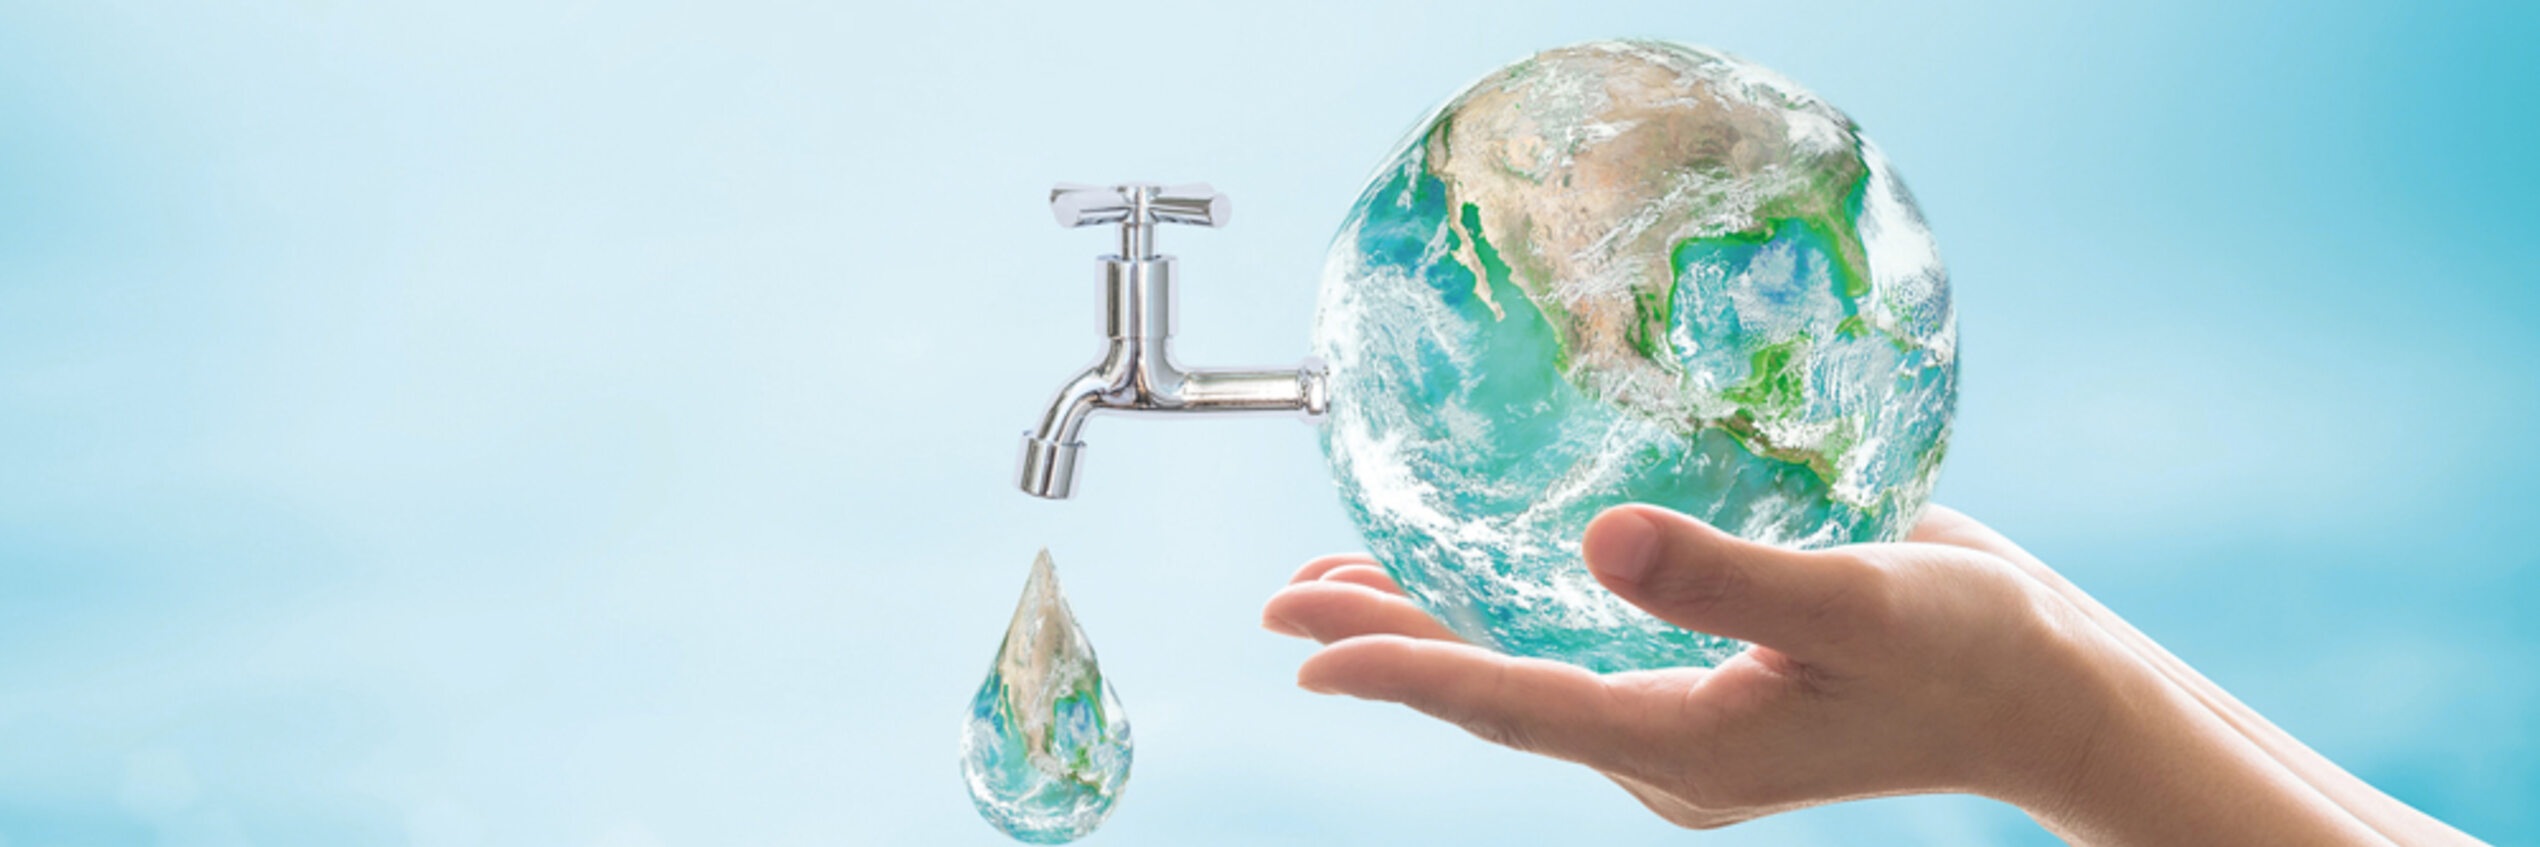 Non-Revenue Waterpercentages over de hele wereld